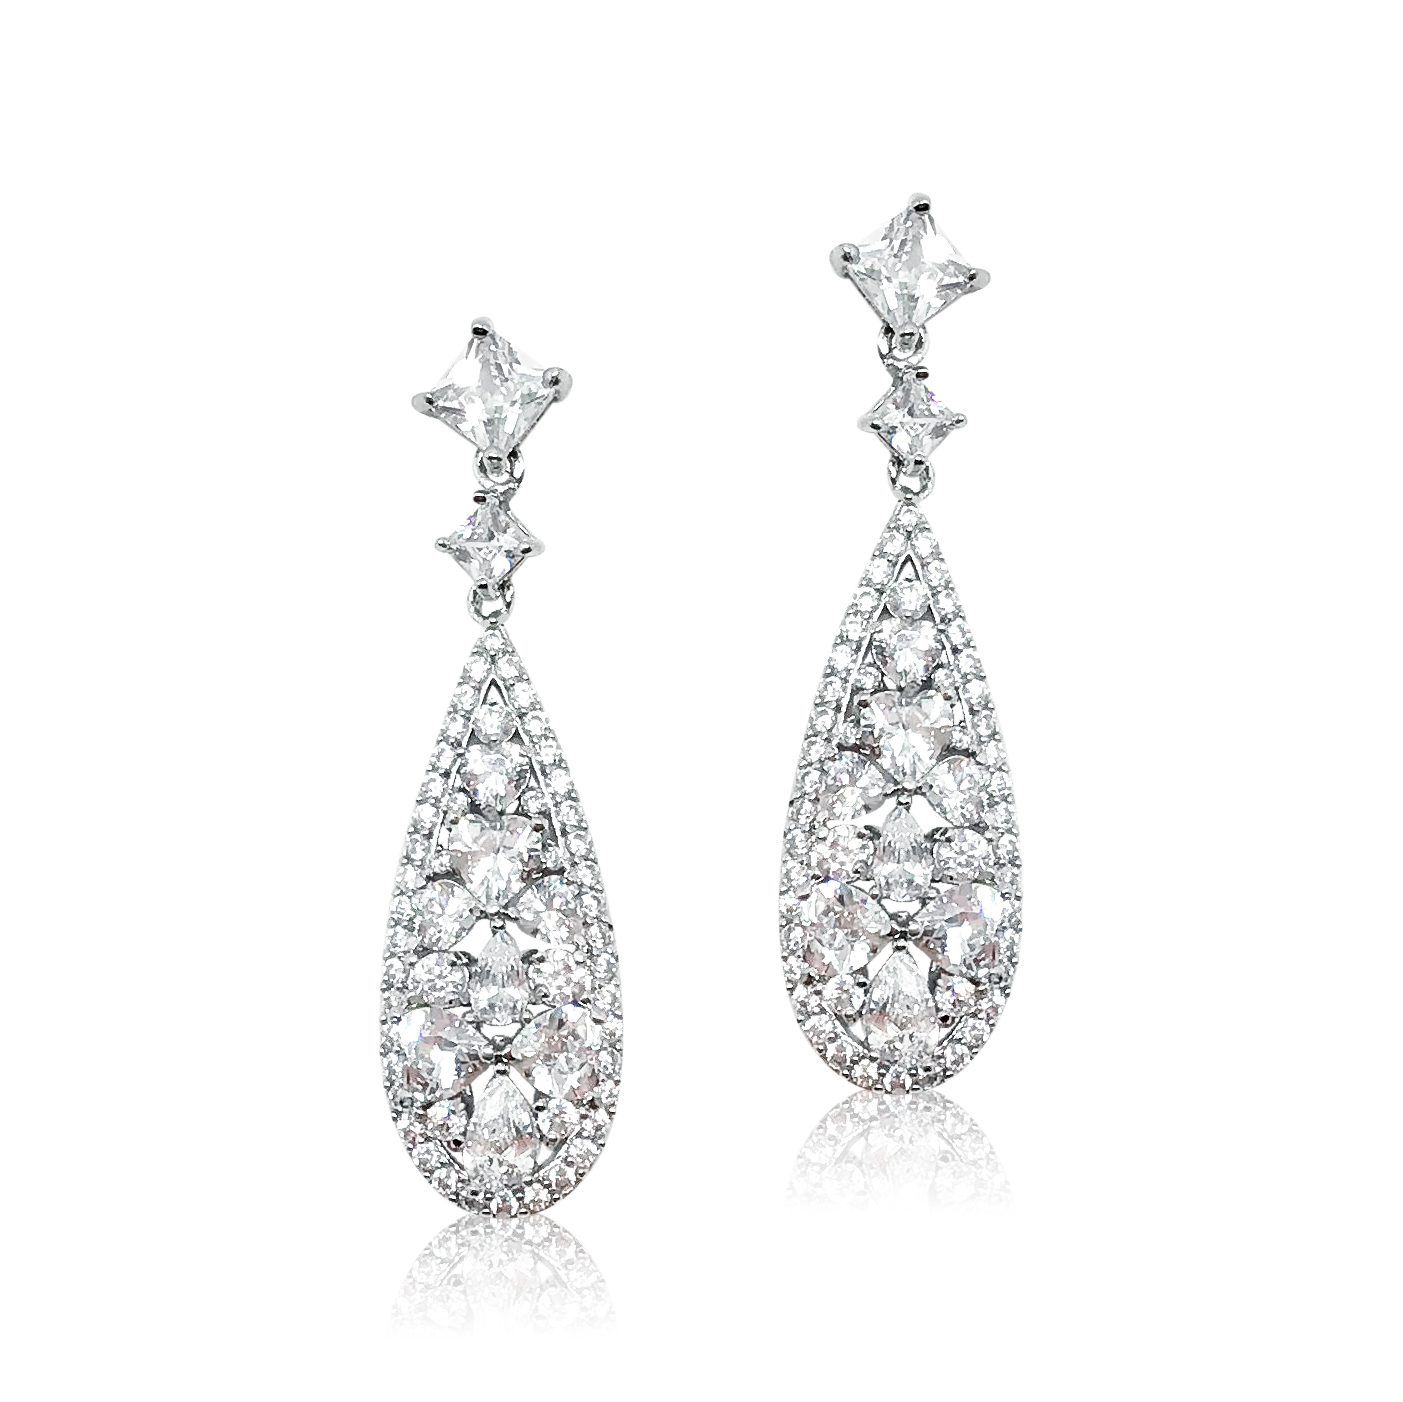 Bridal Drop Earrings|Karina|Jeanette Maree|Shop Online